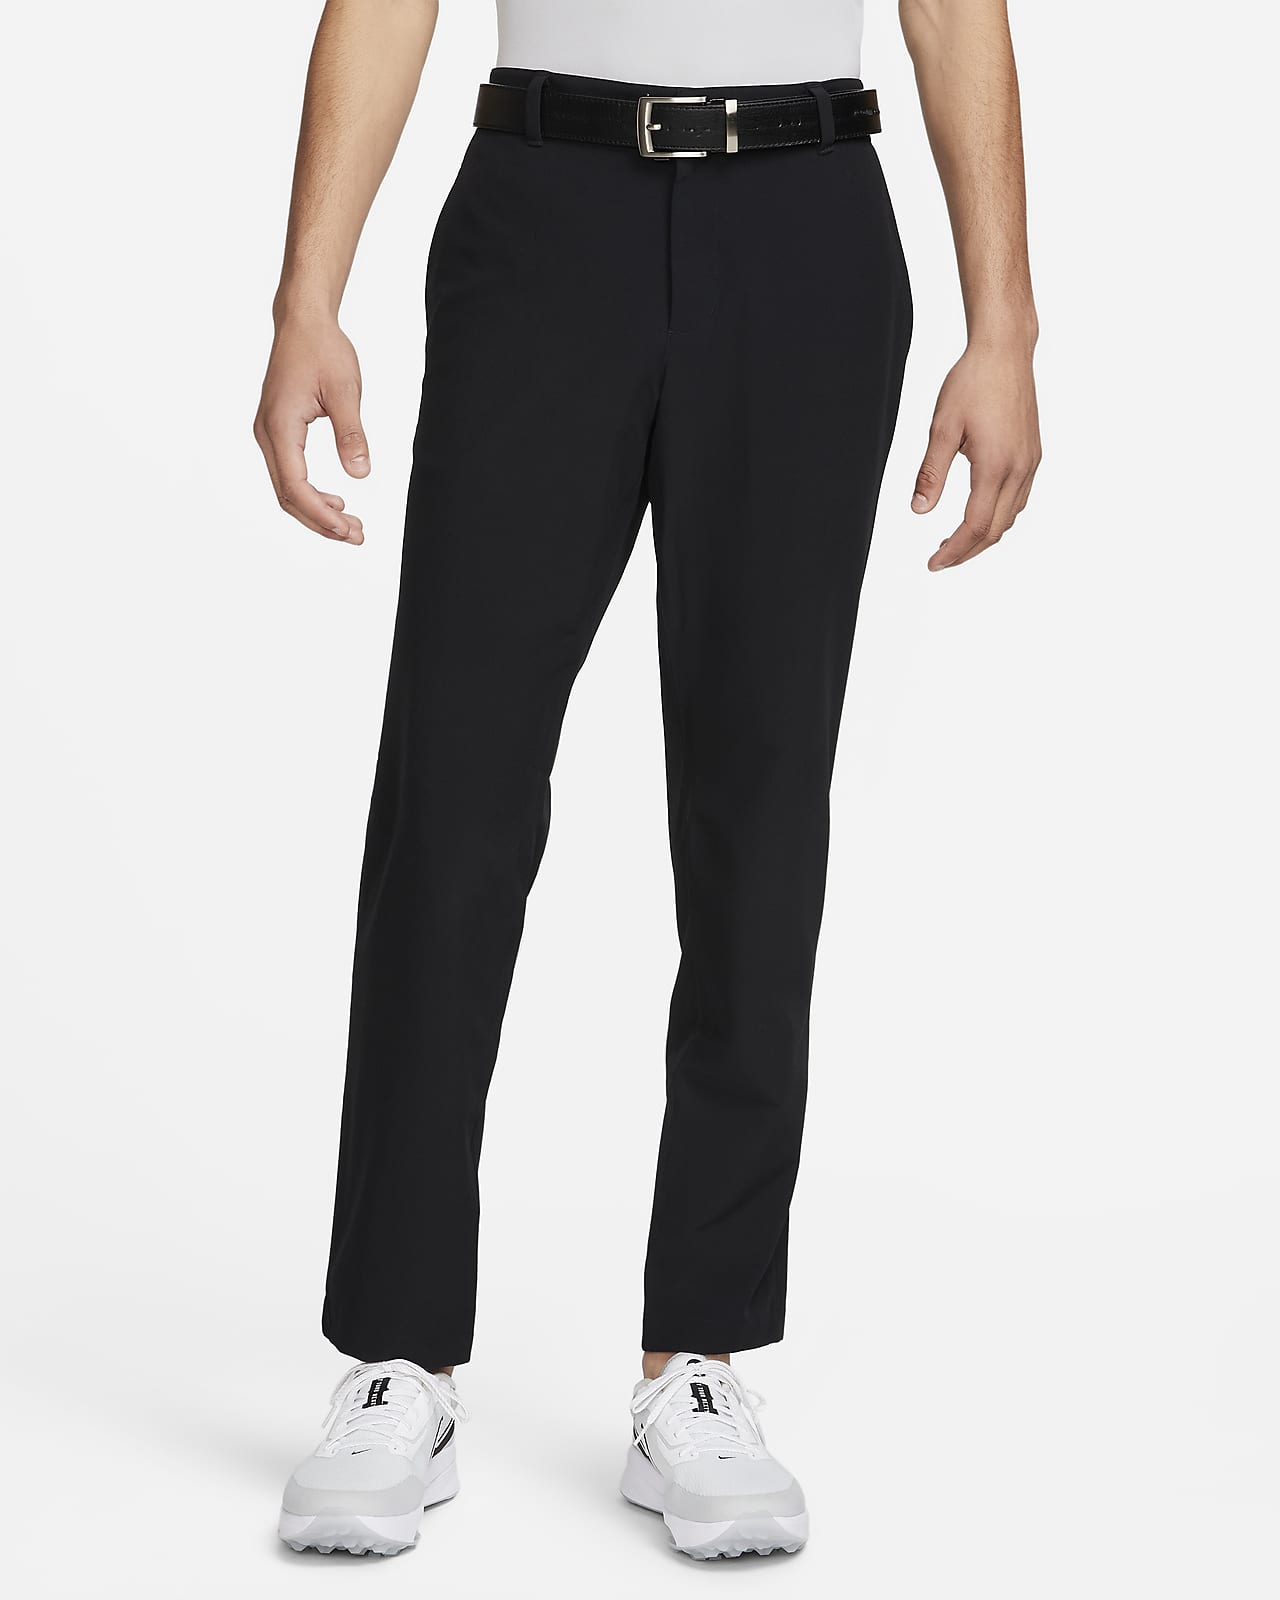 Buy Nike Men's Flex Pants Black in KSA -SSS